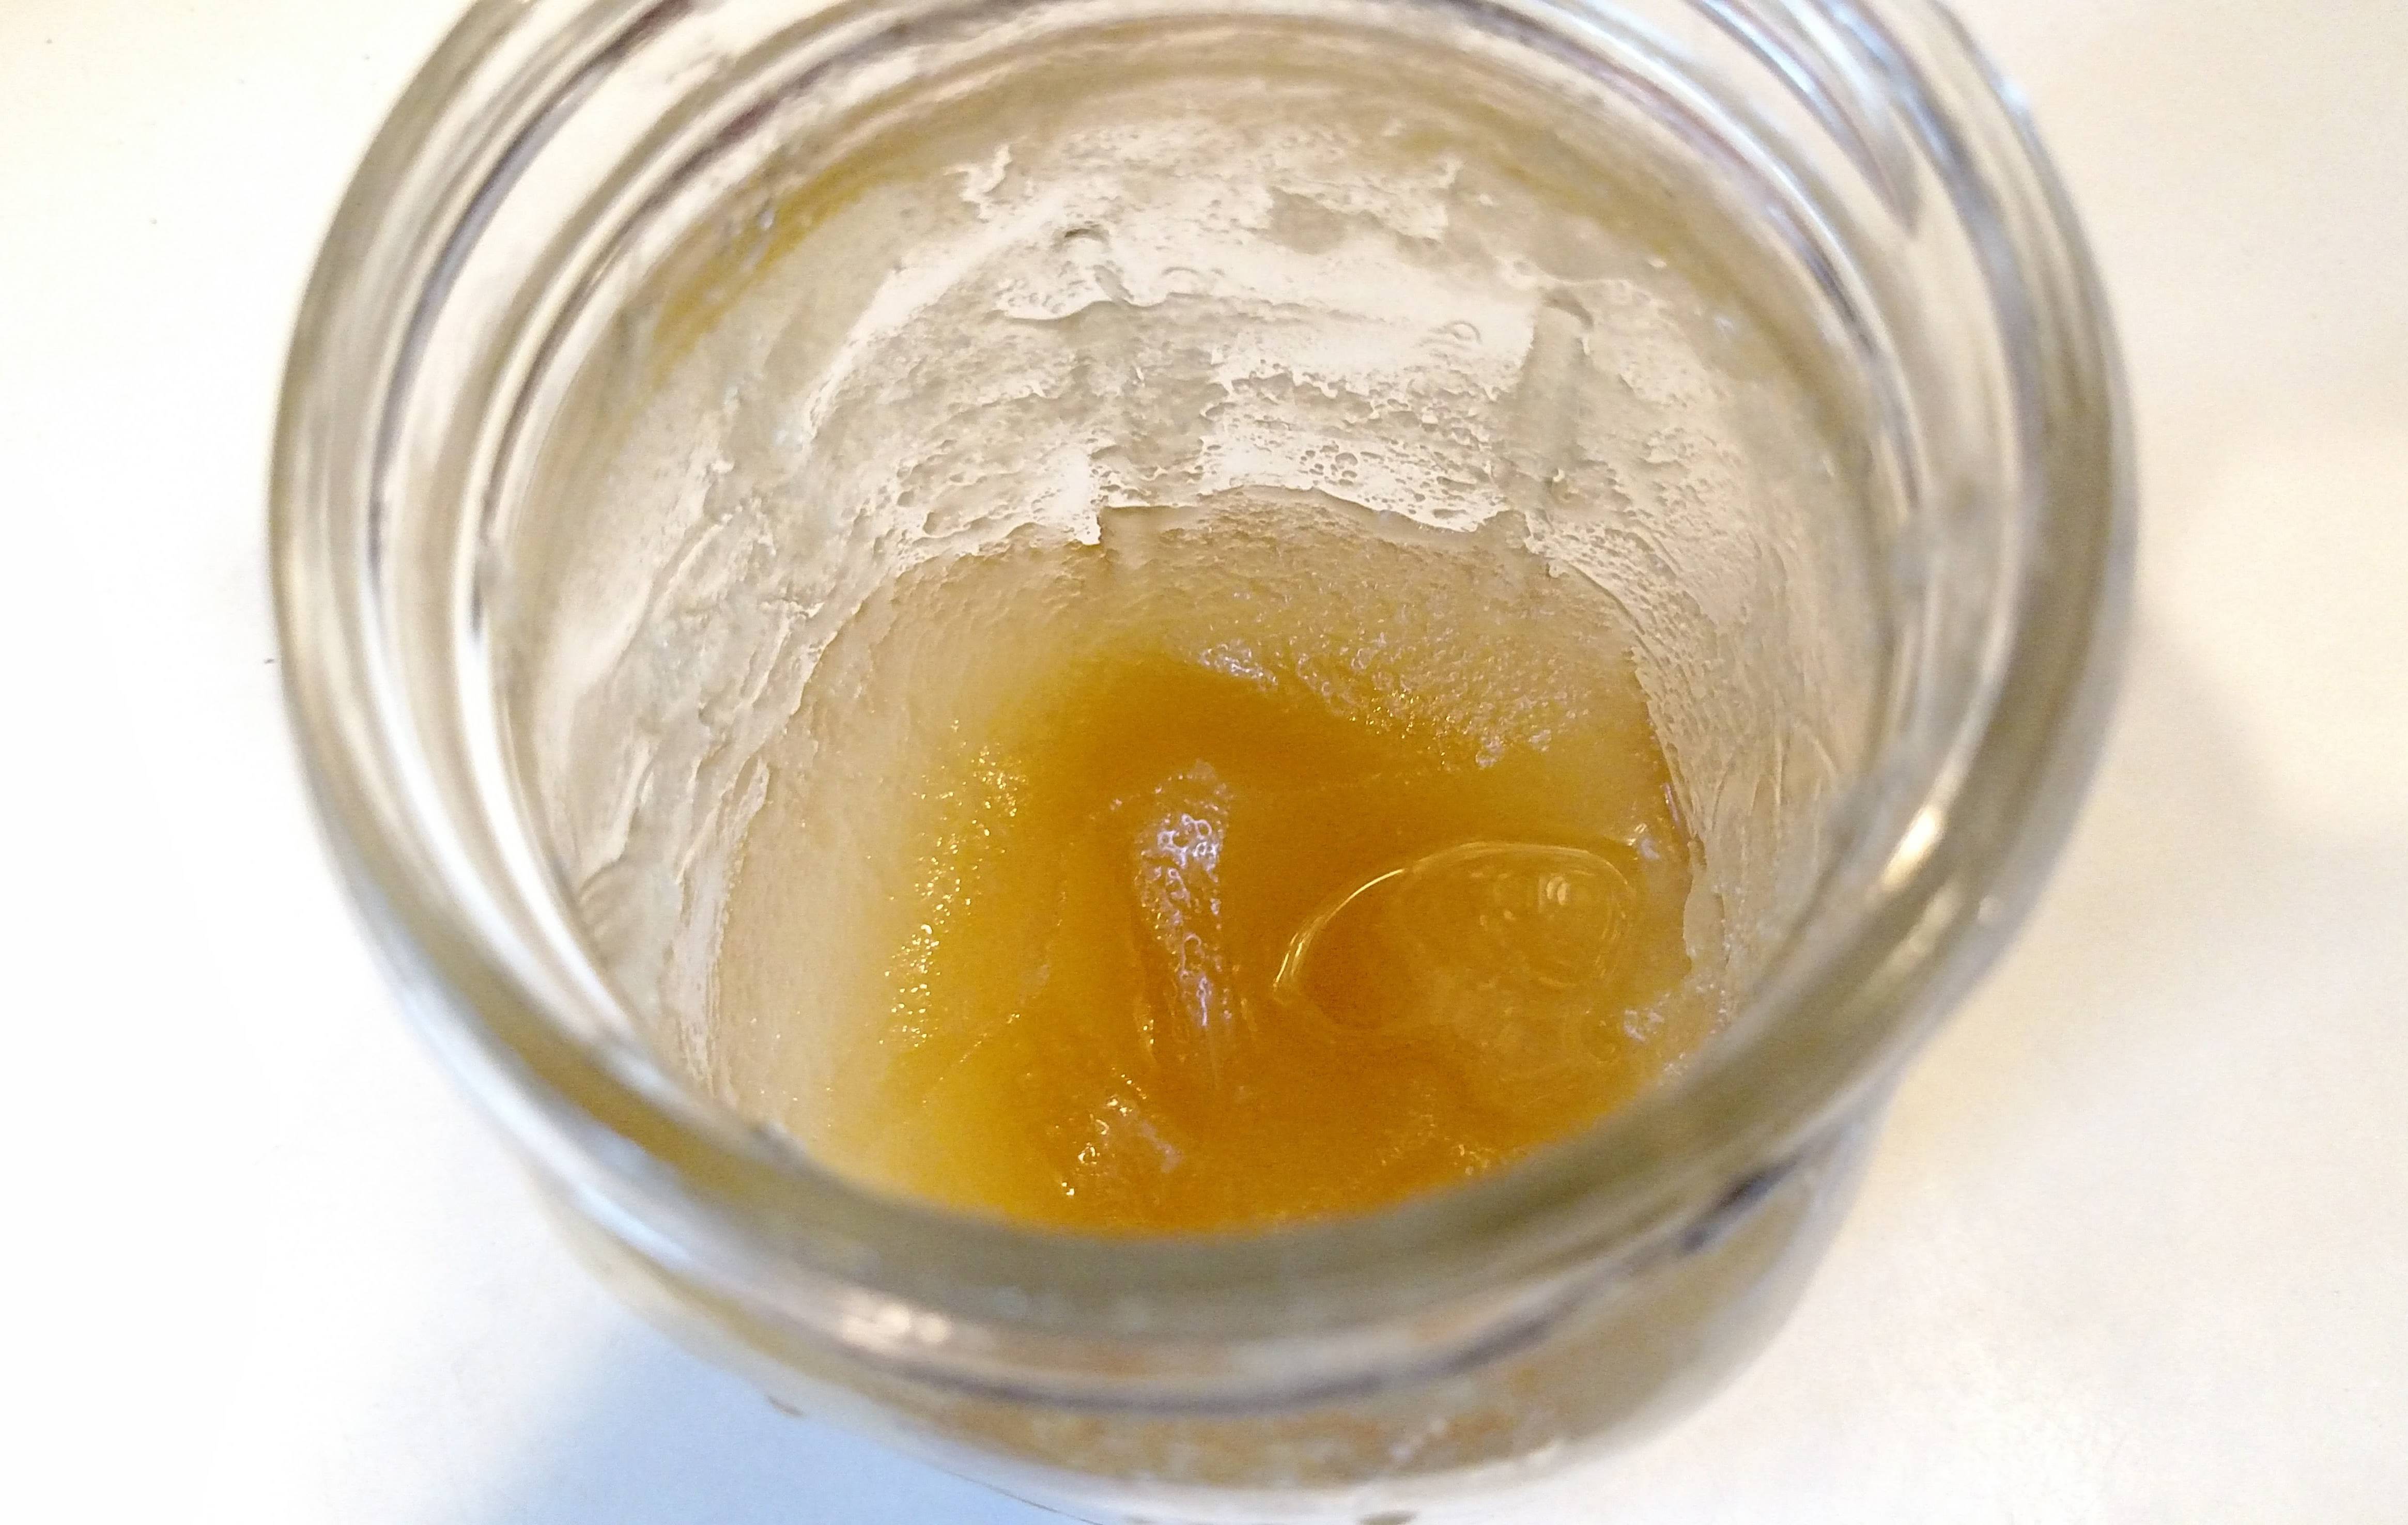 Как растопить засахаренный мед?